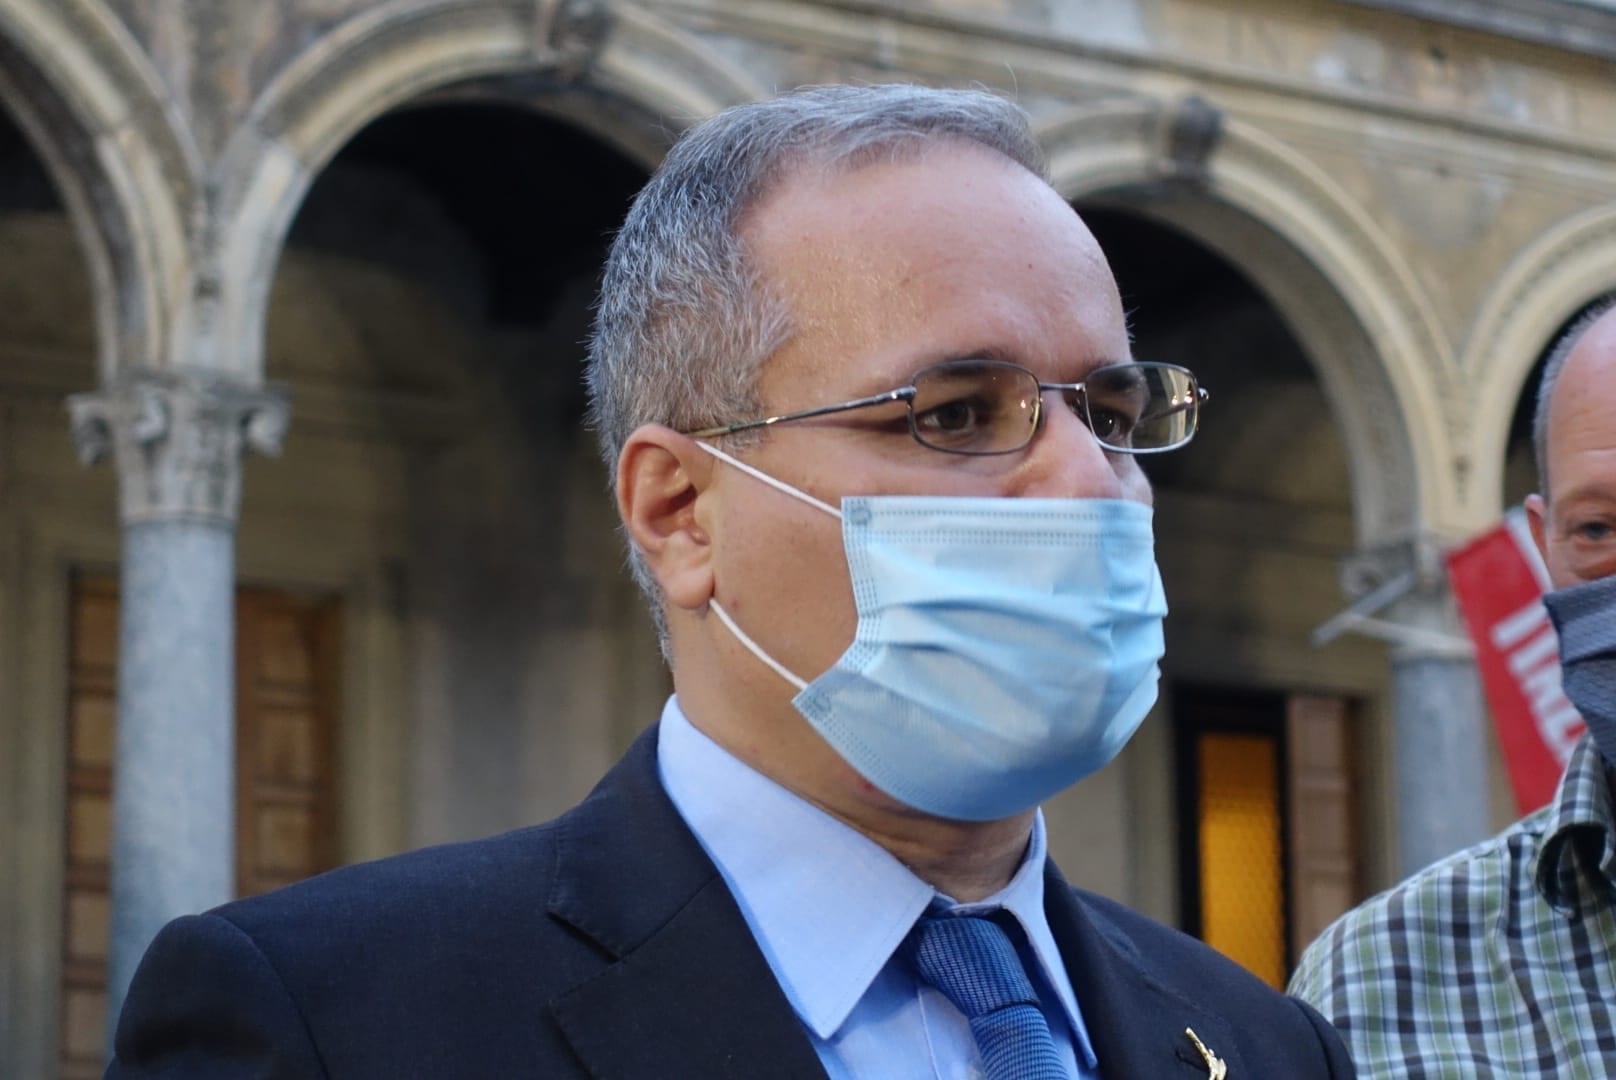 Via Roma ricorso respinto, Fagioli: “Dimostrata la legittimità della scelta”